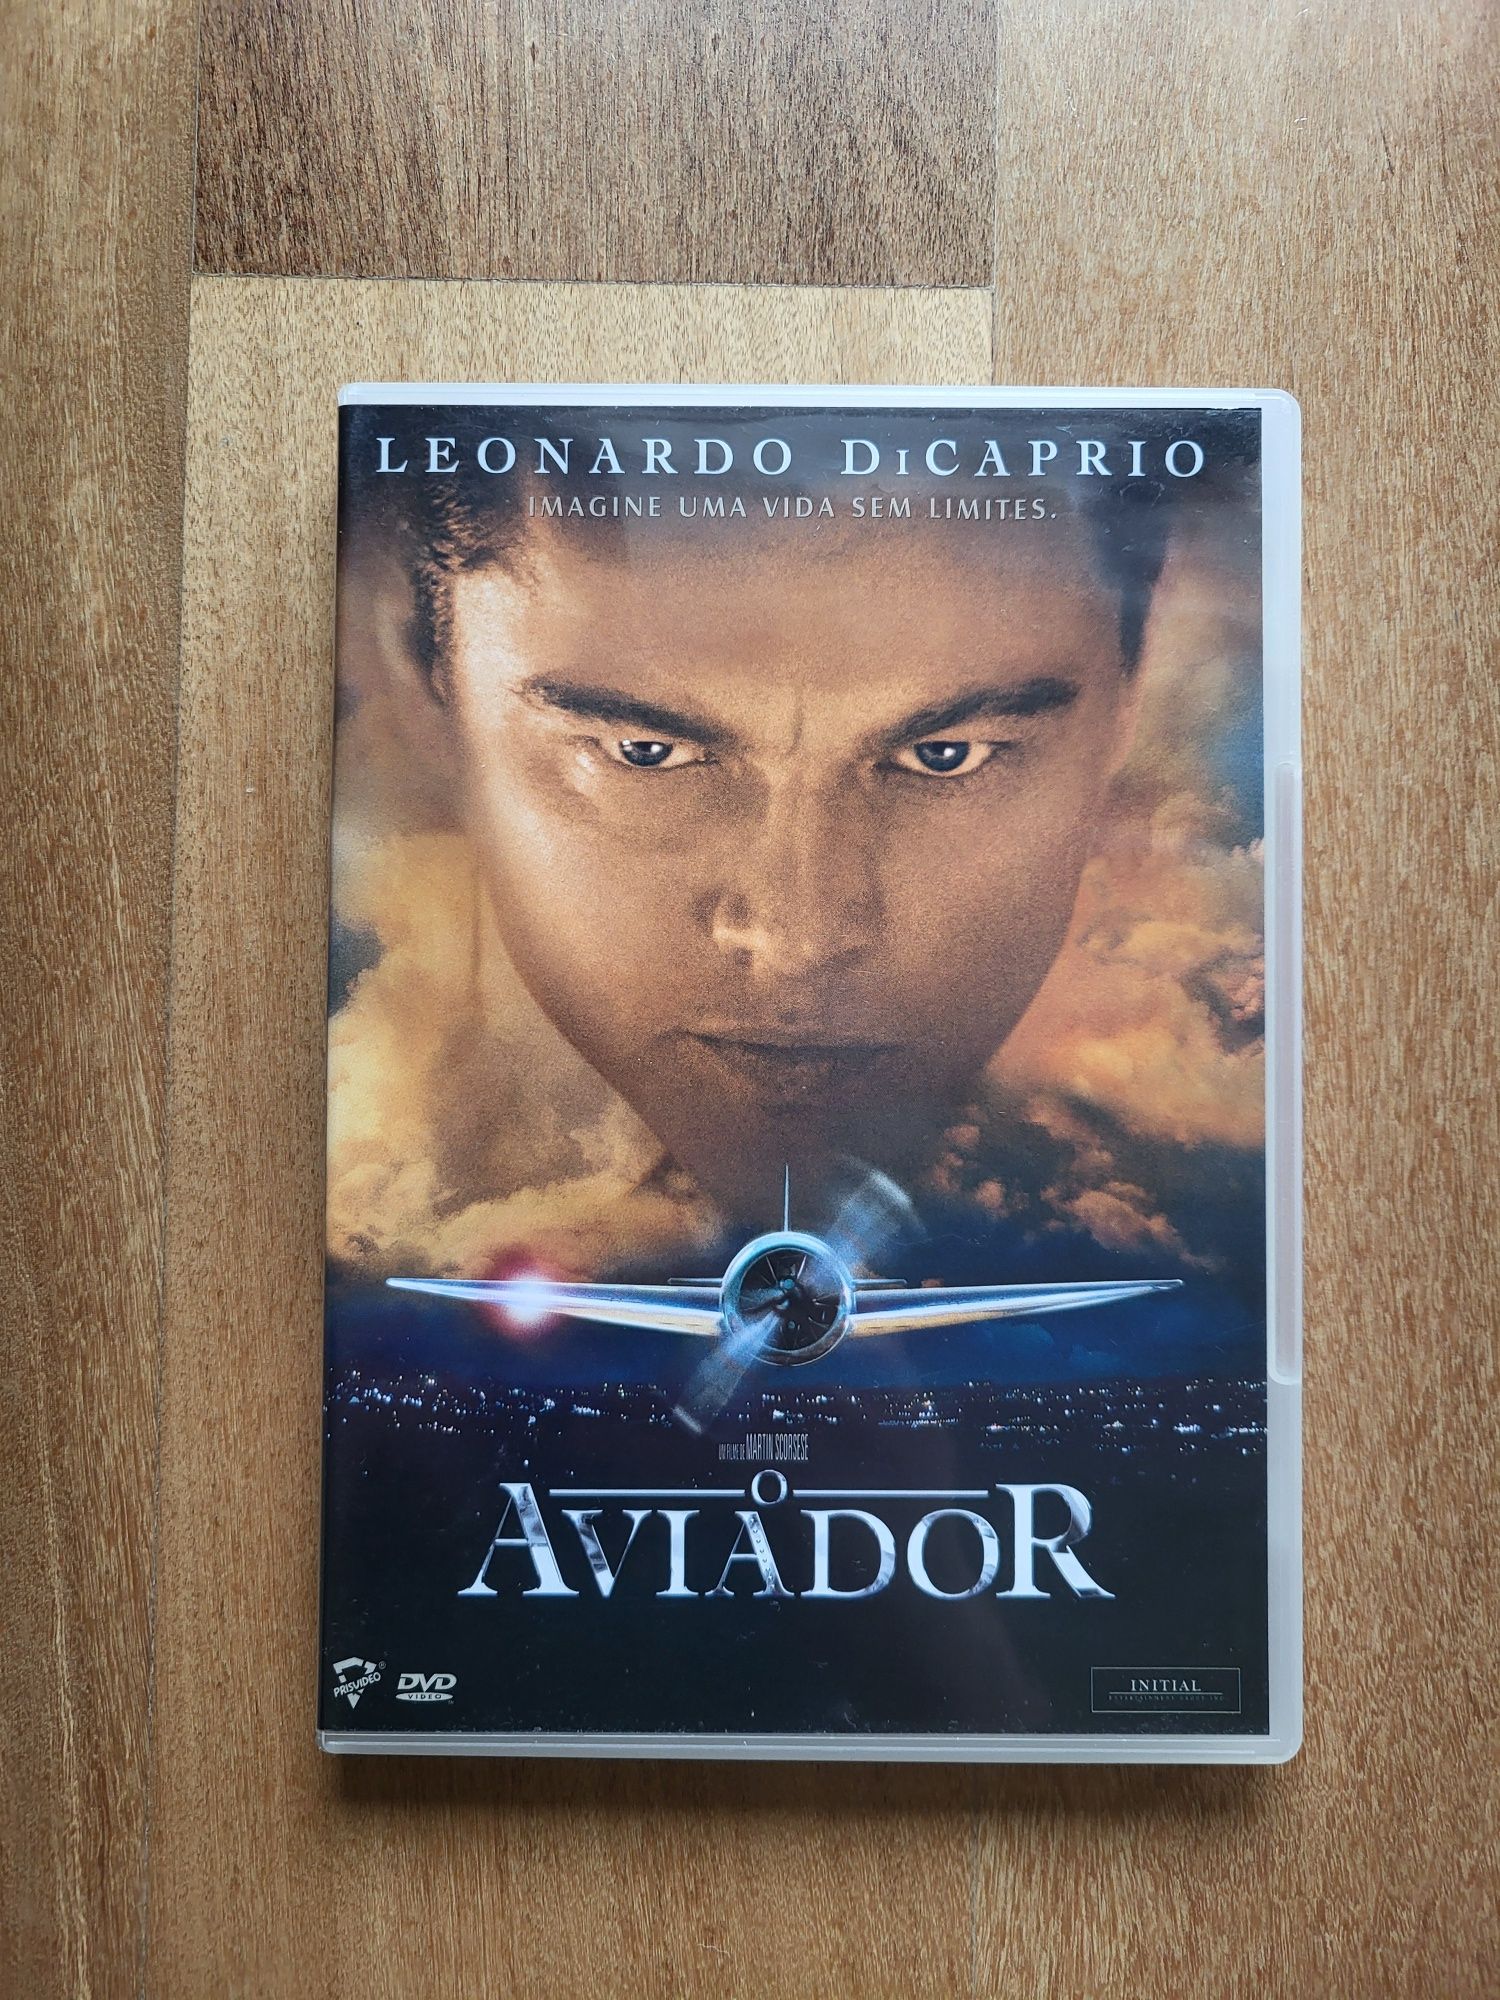 DVD | "O Aviador" ou "The Aviator"